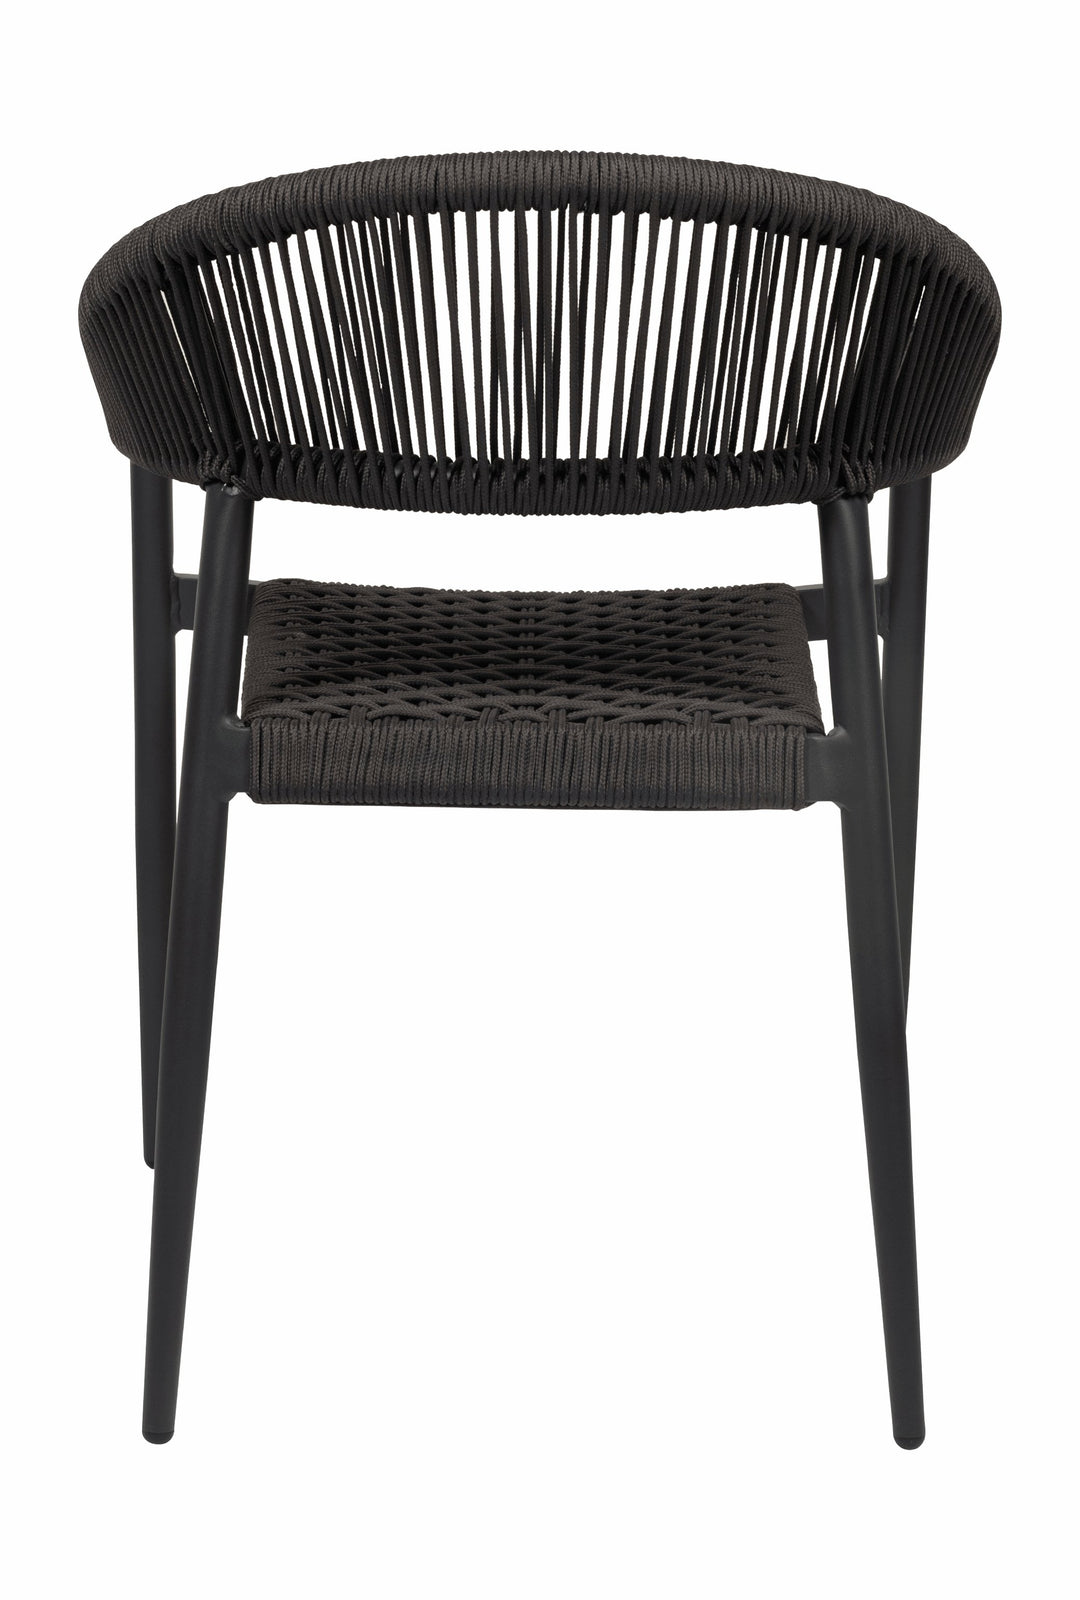 Iona Outdoor Chair - Hertex Haus Online - badge_fully_outdoor